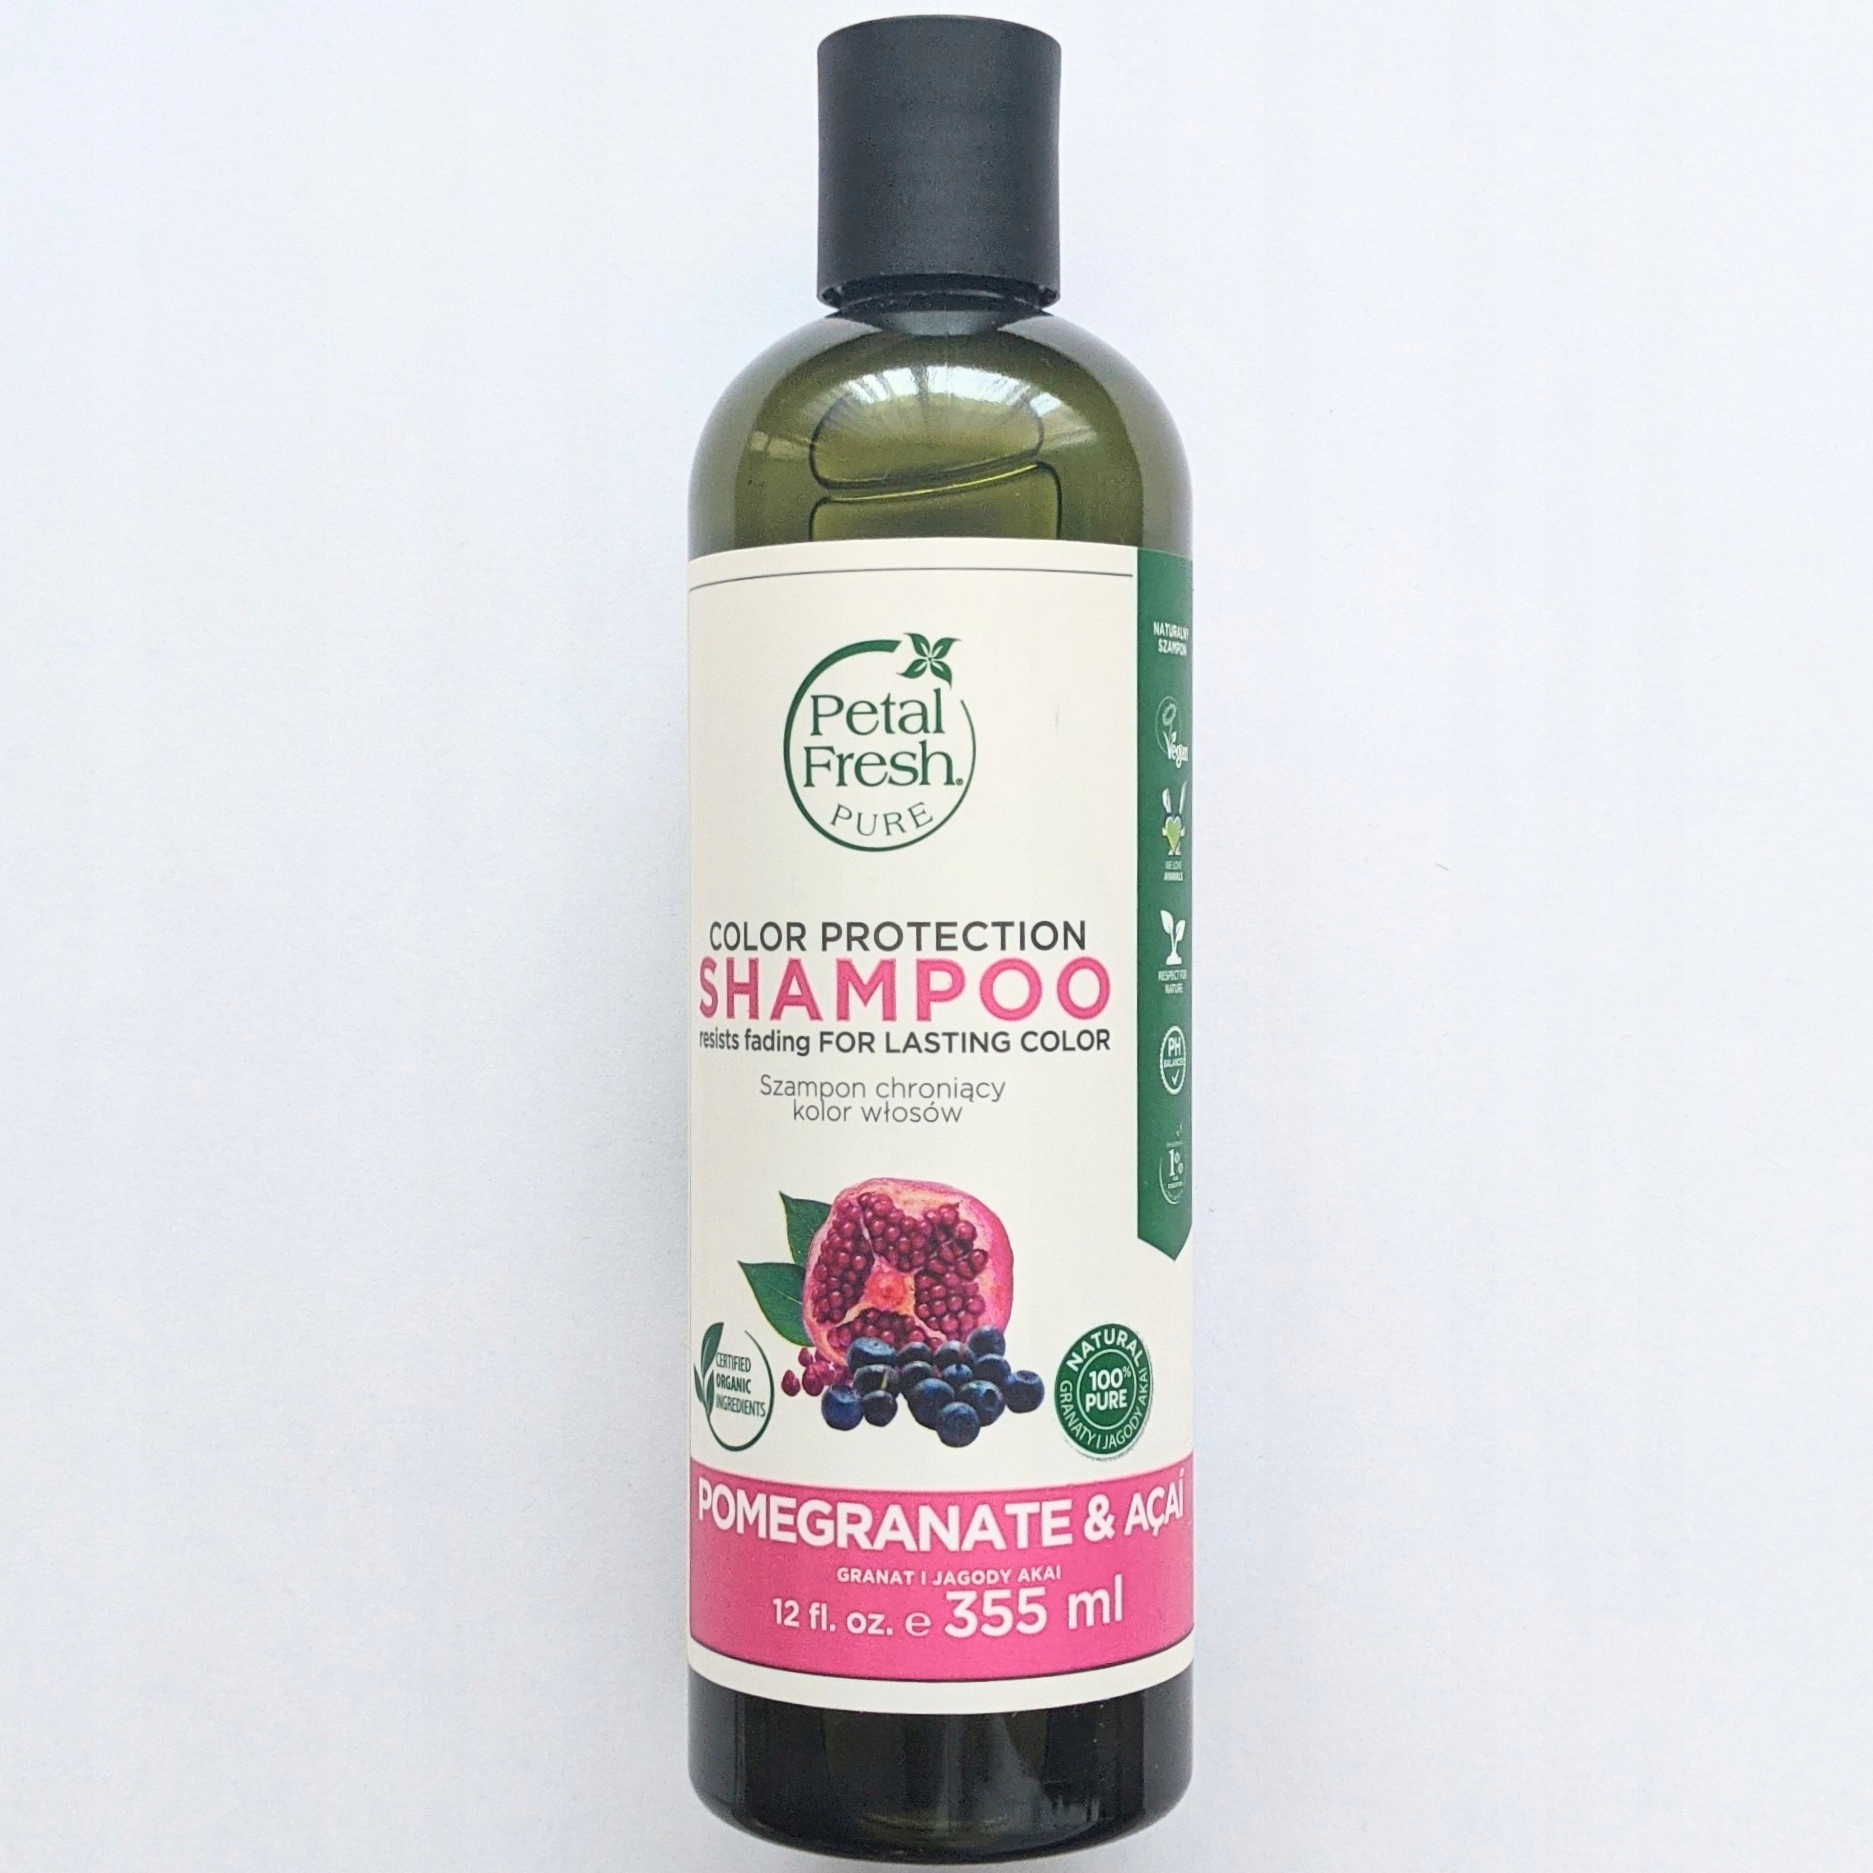 szampon petal fresh pure po keratynowym prostowaniu